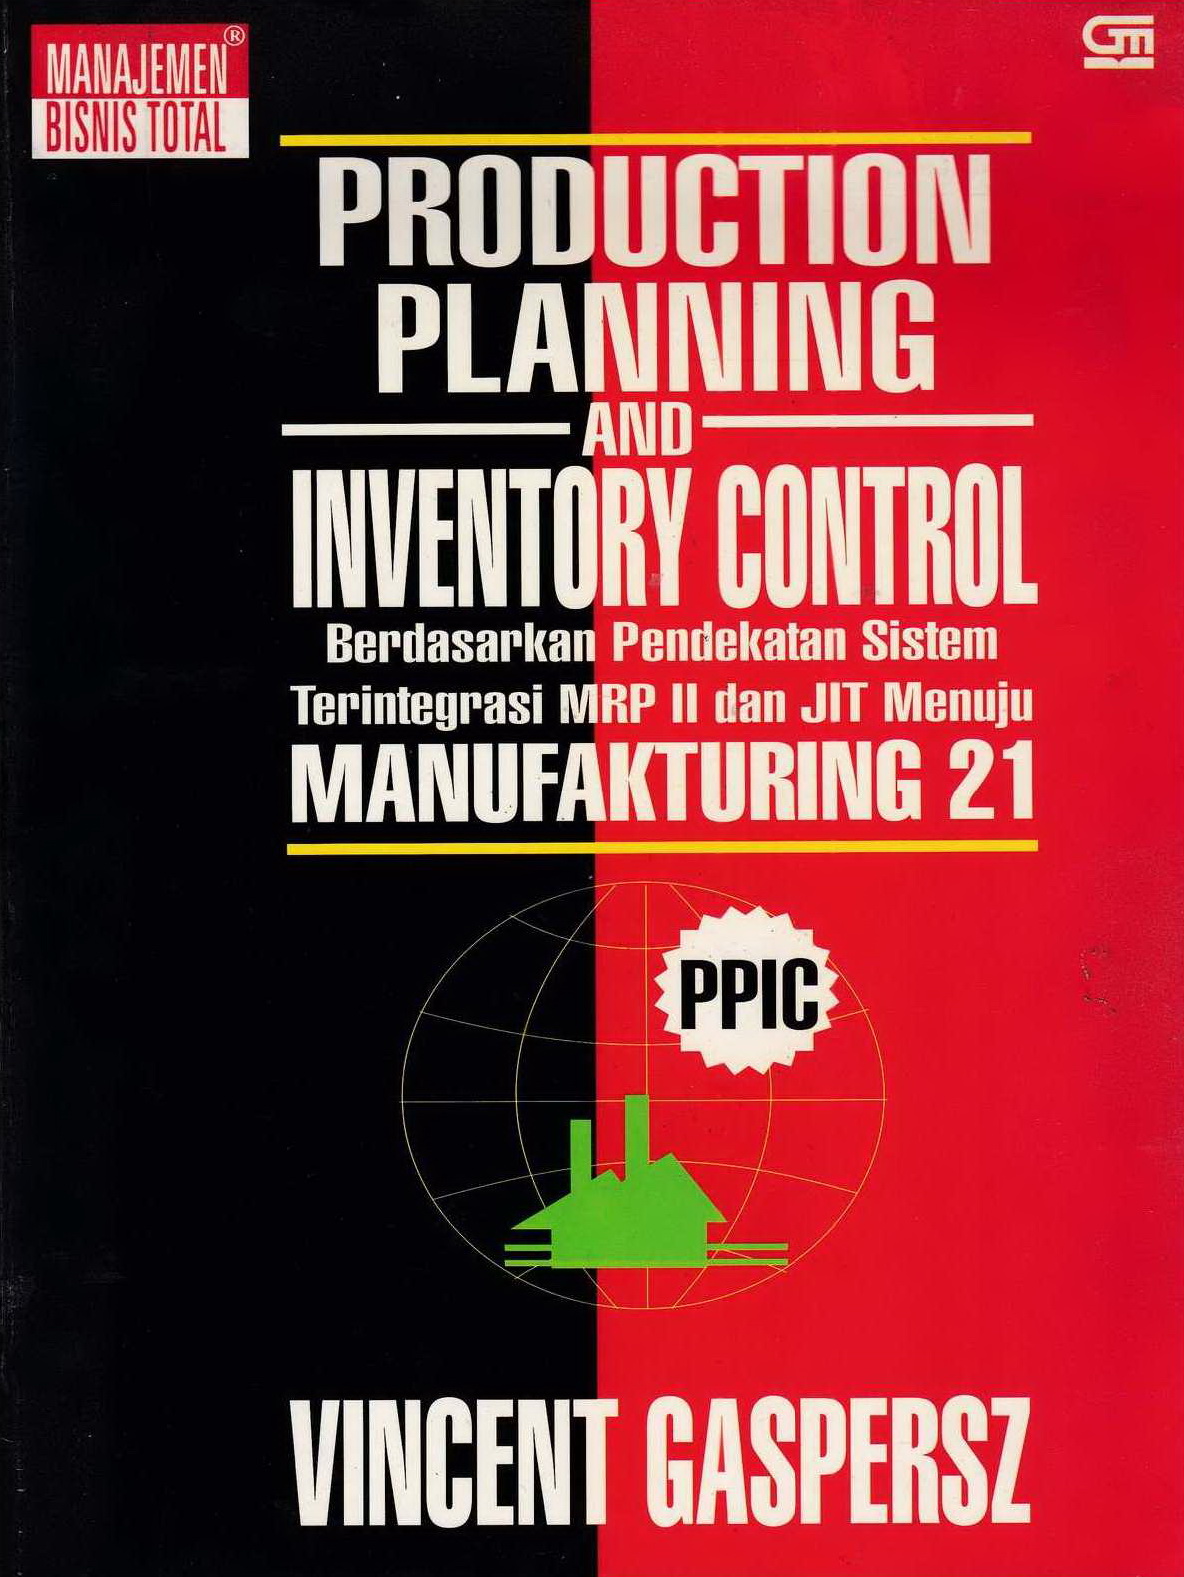 1998 Production Planning and Inventory Control Berdasarkan Pendekatan Sistem Terintegrasi MRP II dan JIT Menuju Manufakturing 21 VG